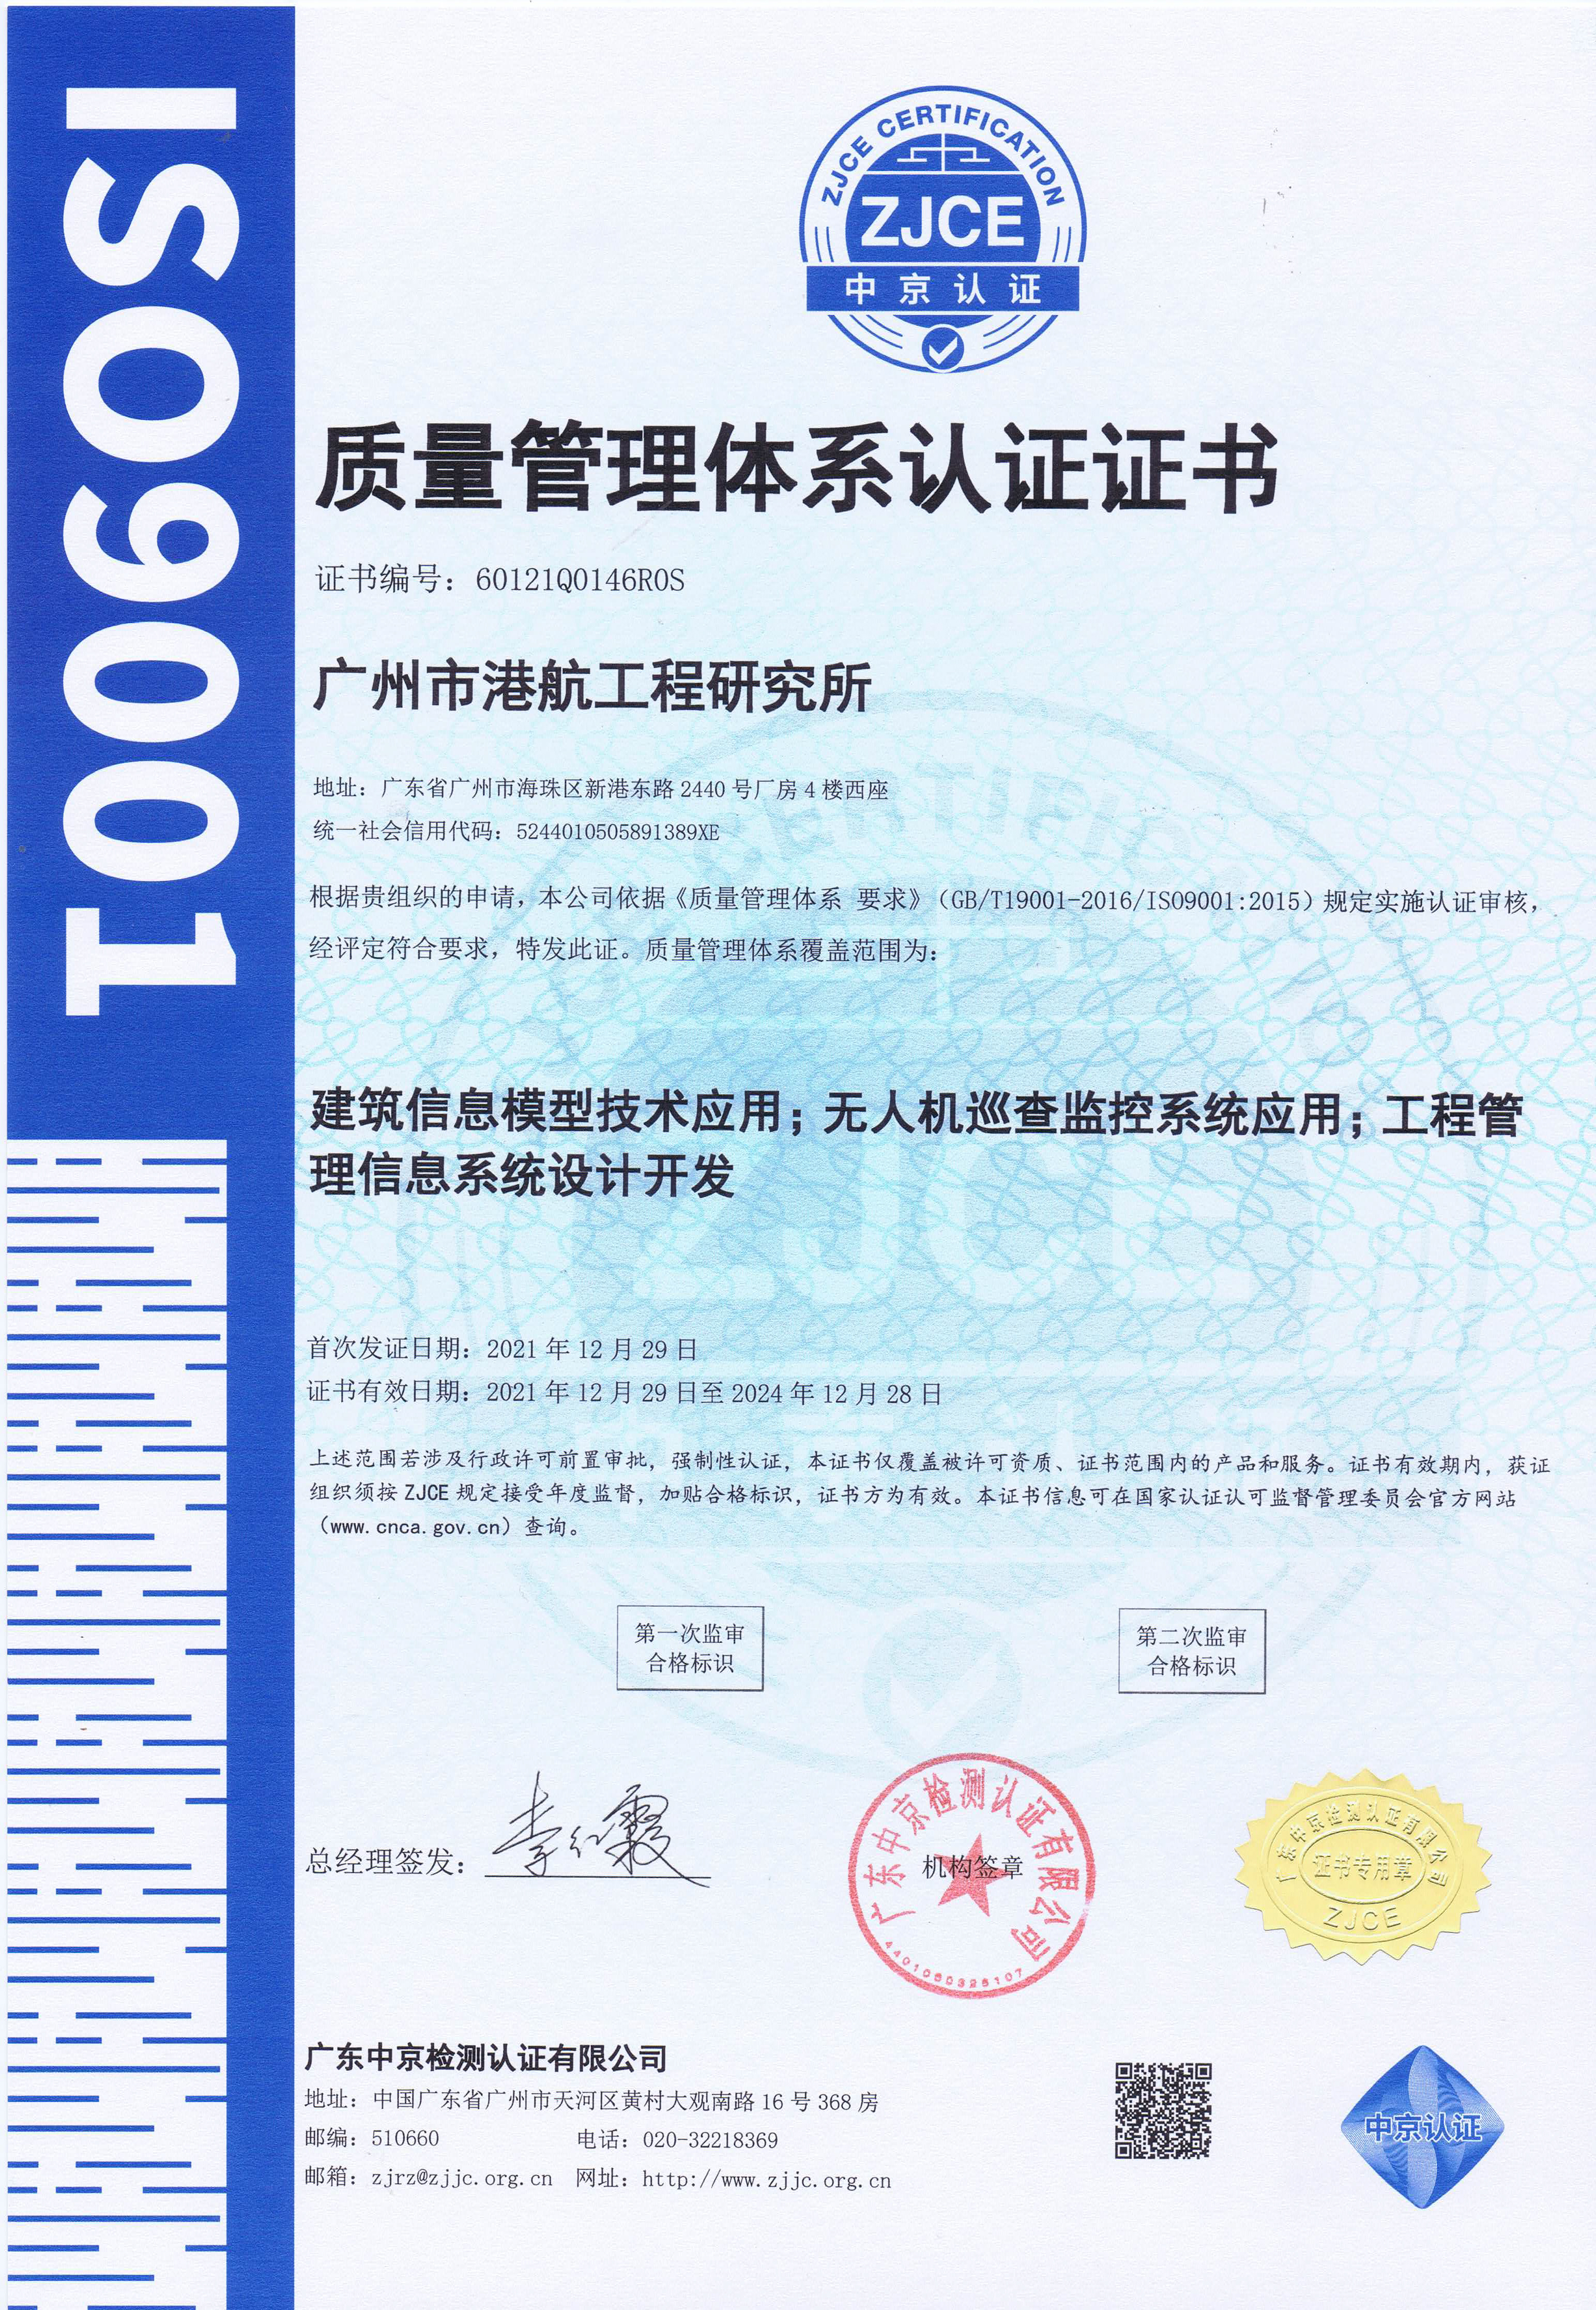 我单位部分产品通过ISO9001体系认证